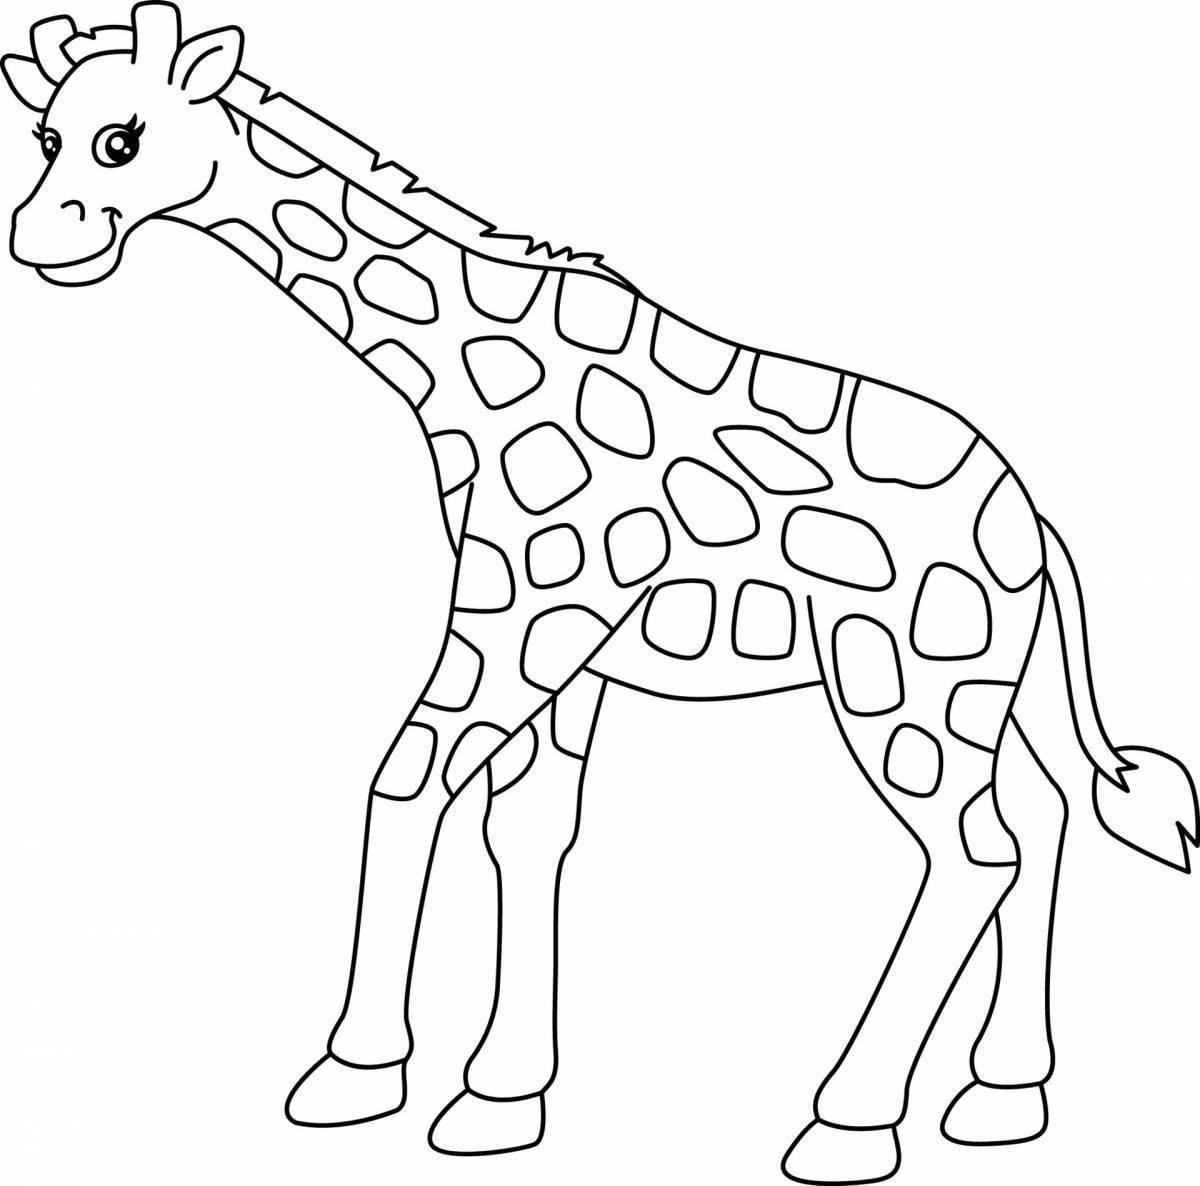 Изысканная раскраска жирафа для детей 3-4 лет